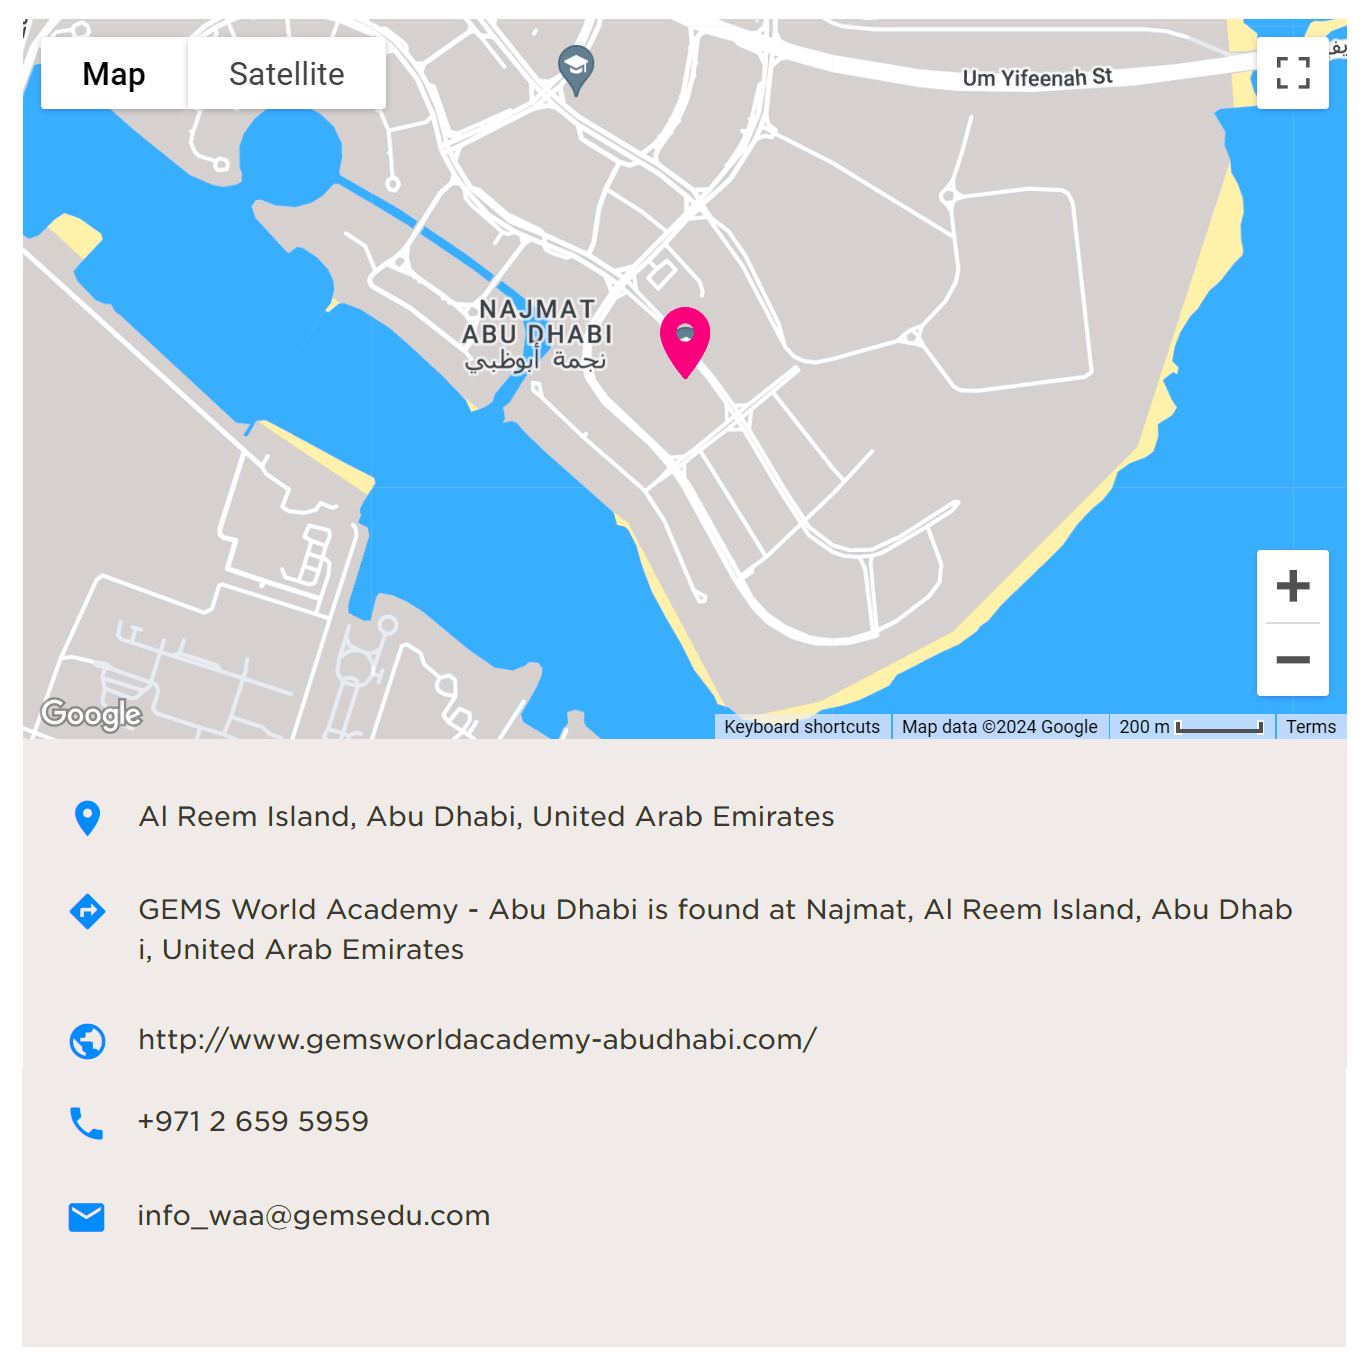 Karte mit Wegbeschreibung zur GEMS World Academy Abu Dhabi